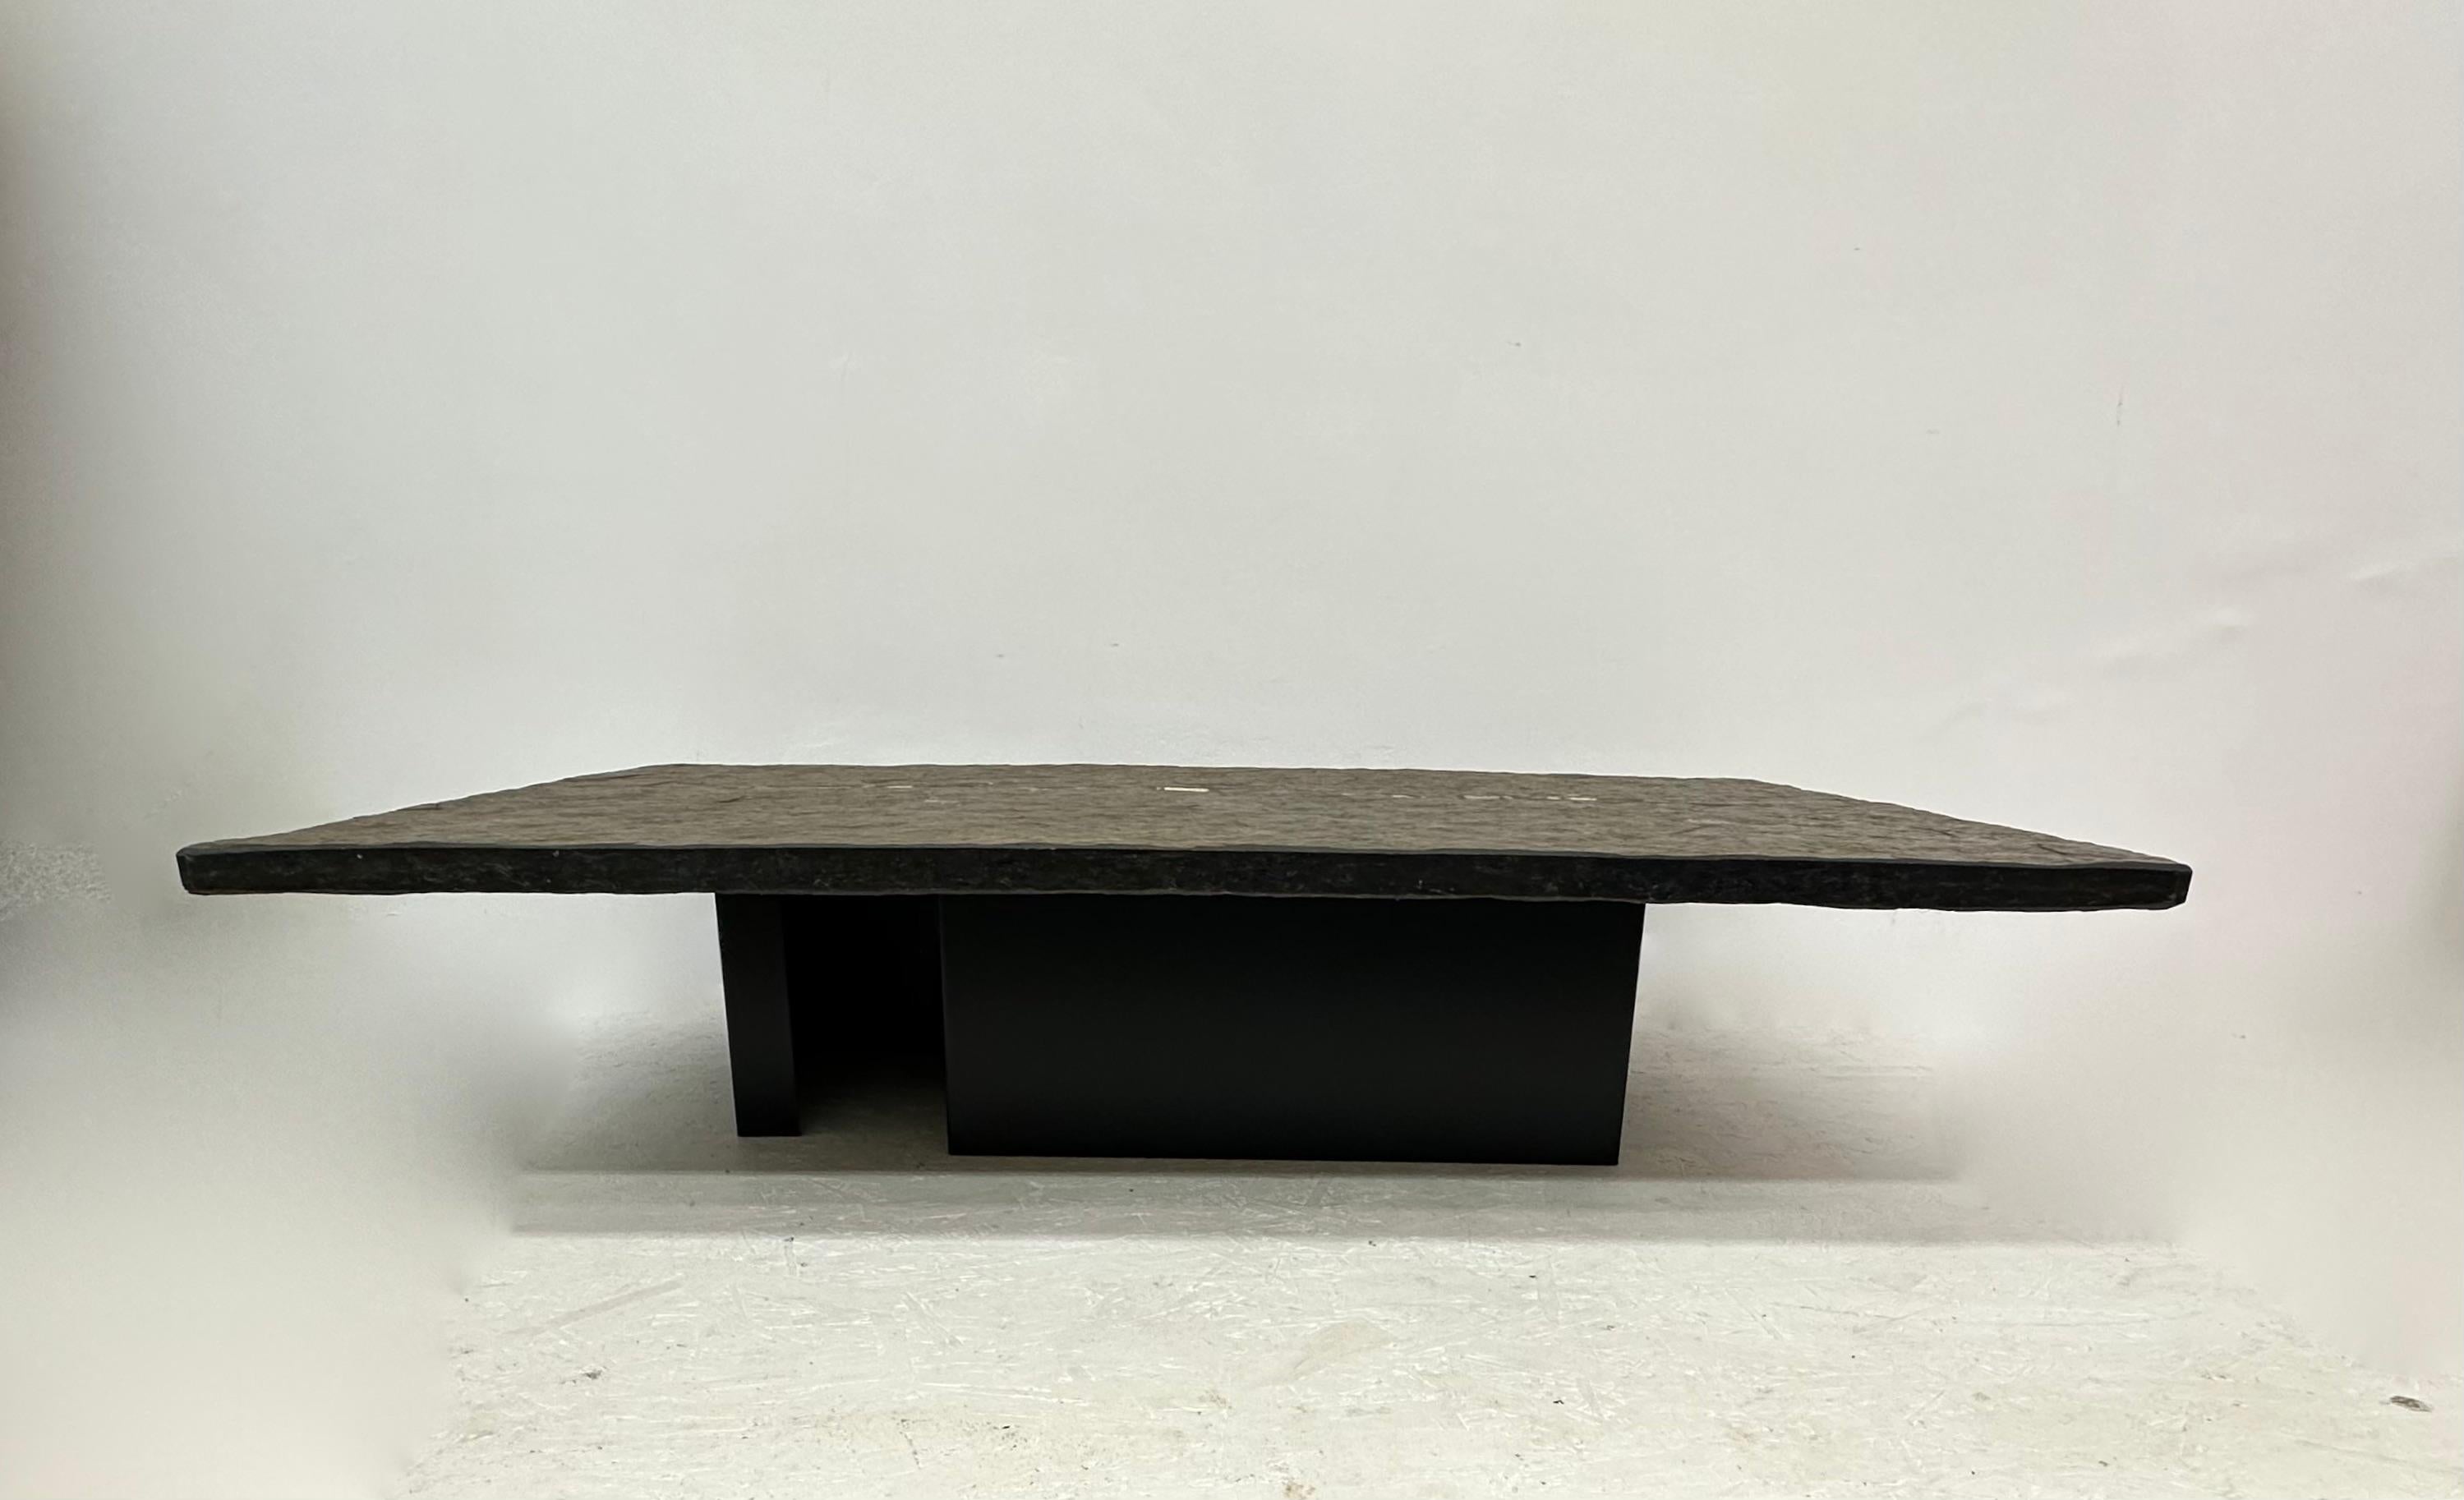 Table basse rectangulaire Paul Kingma , 1970

Dimensions : 140 cm L, 79,5cm P , 32 cm H
MATERIAL : Pierre naturelle, métal
Couleur : Marron , Noir , Or